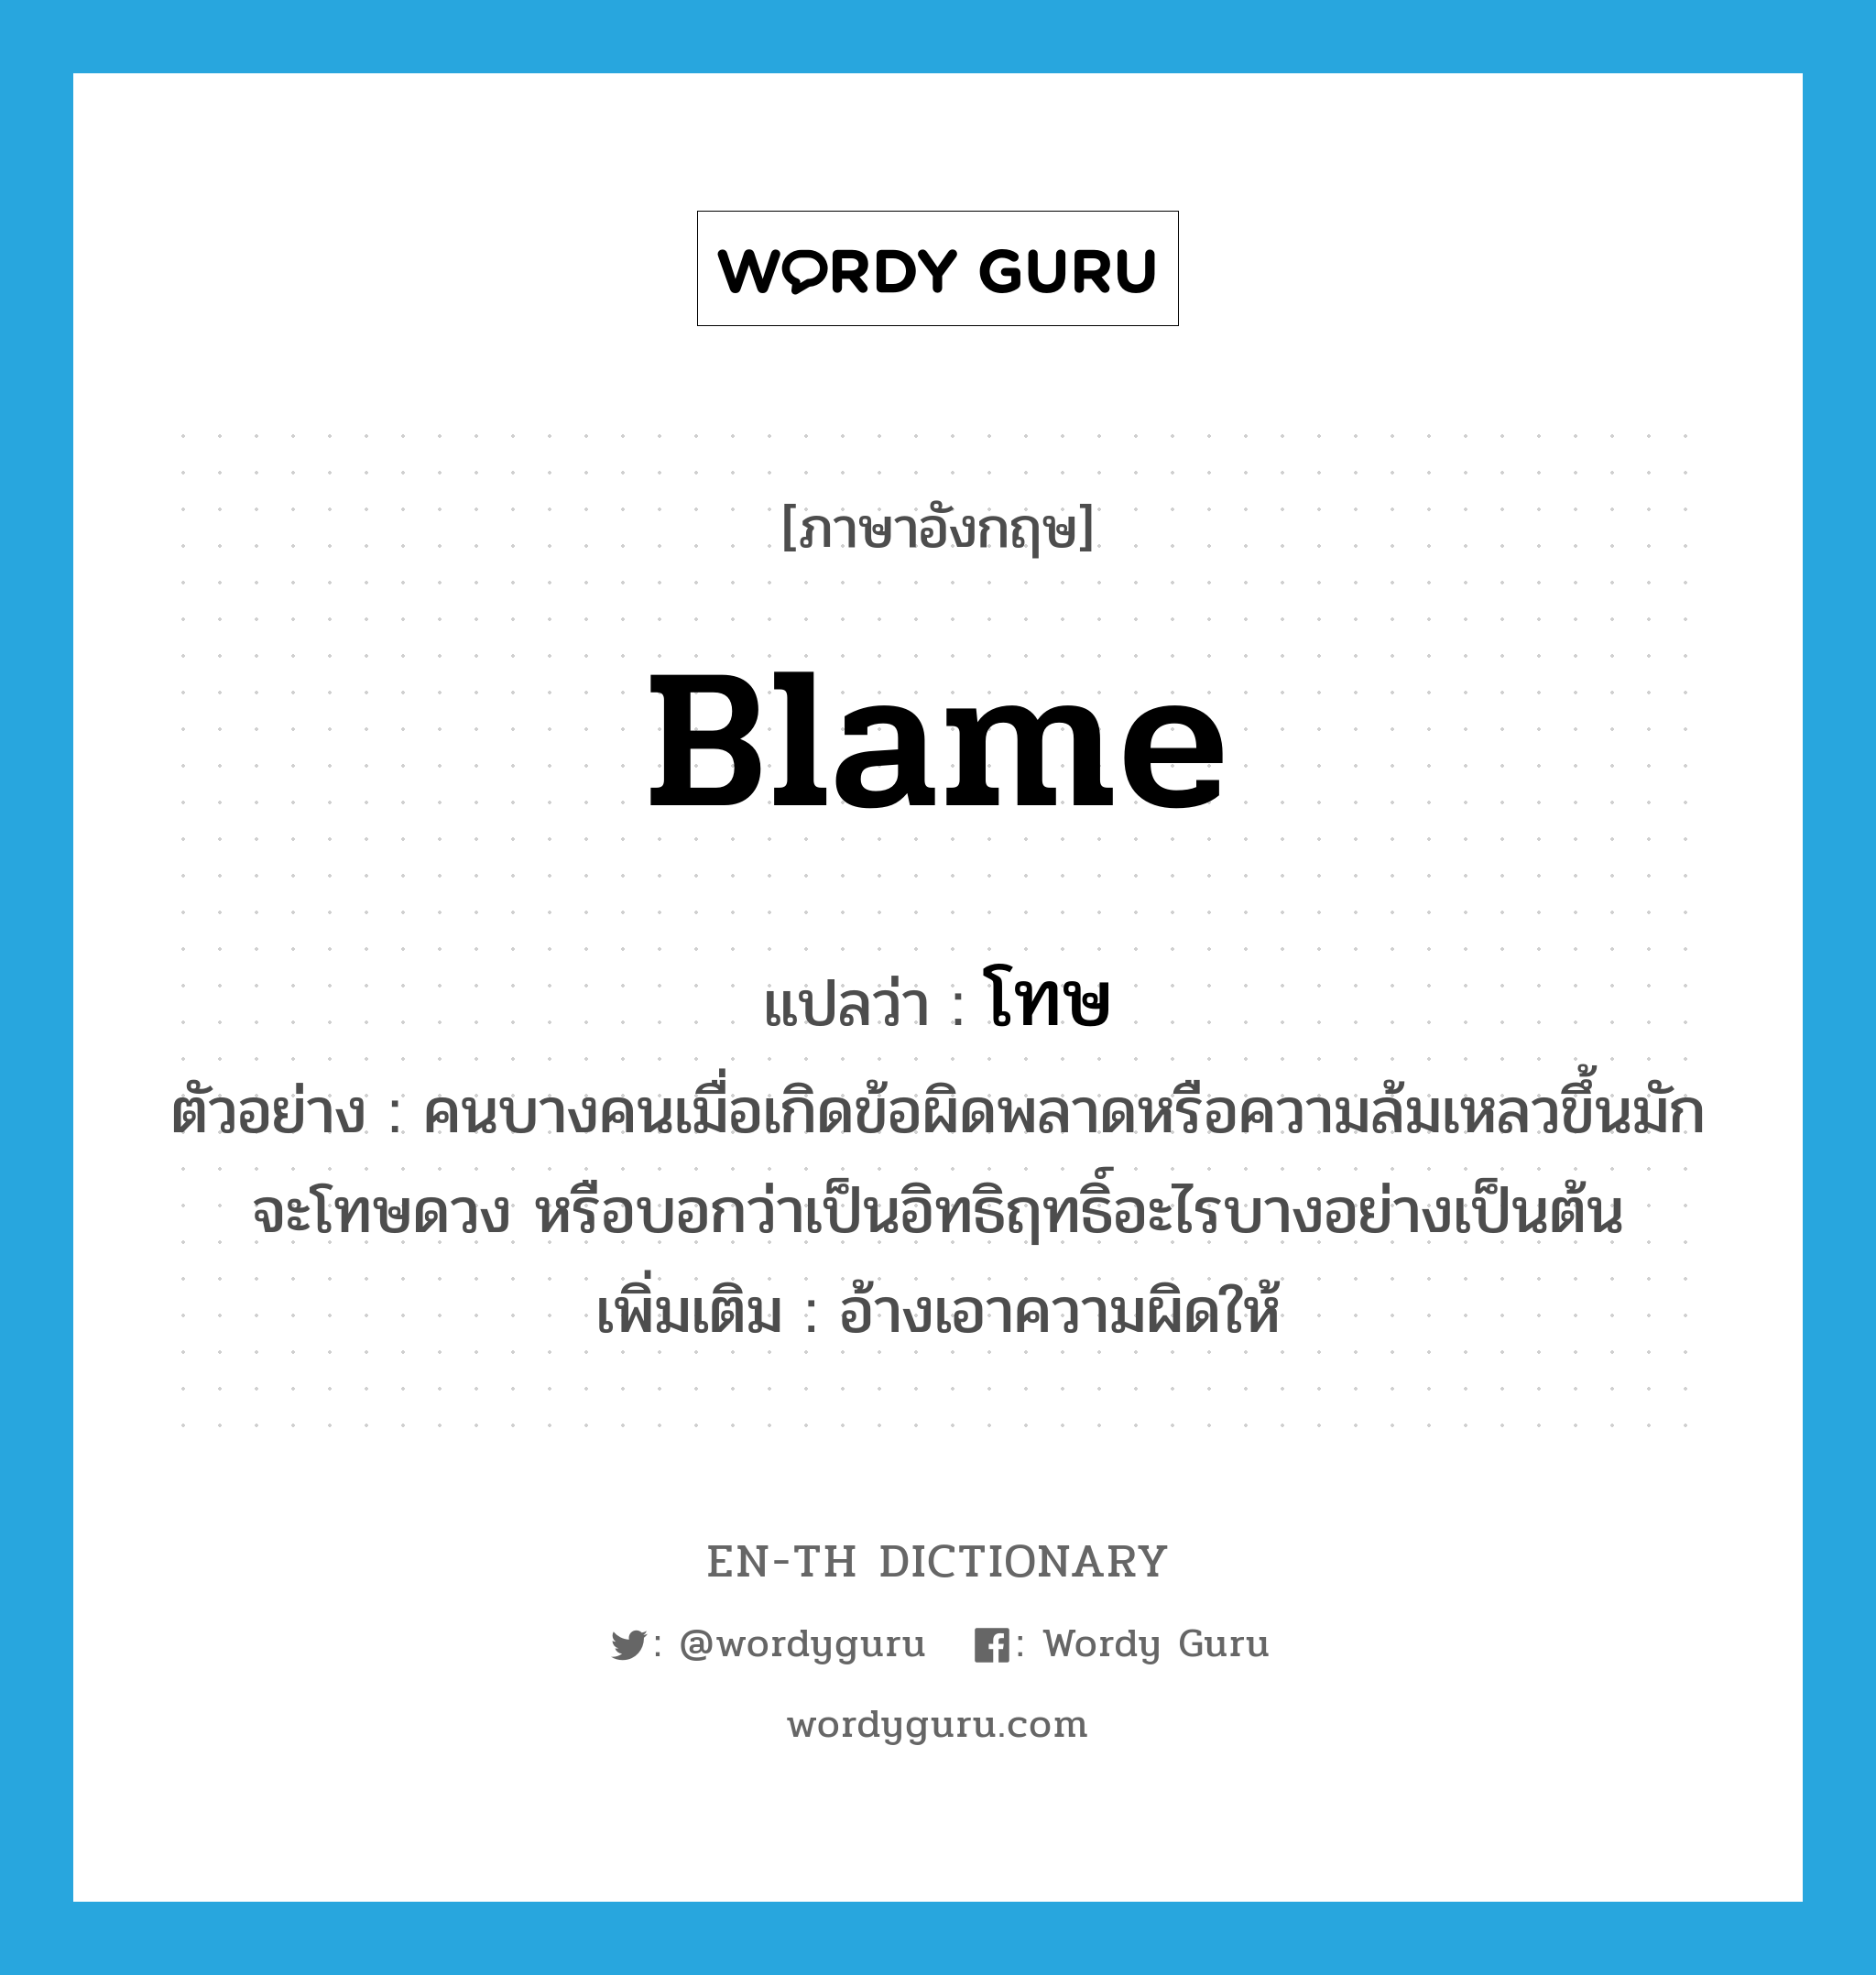 blame แปลว่า?, คำศัพท์ภาษาอังกฤษ blame แปลว่า โทษ ประเภท V ตัวอย่าง คนบางคนเมื่อเกิดข้อผิดพลาดหรือความล้มเหลวขึ้นมักจะโทษดวง หรือบอกว่าเป็นอิทธิฤทธิ์อะไรบางอย่างเป็นต้น เพิ่มเติม อ้างเอาความผิดให้ หมวด V